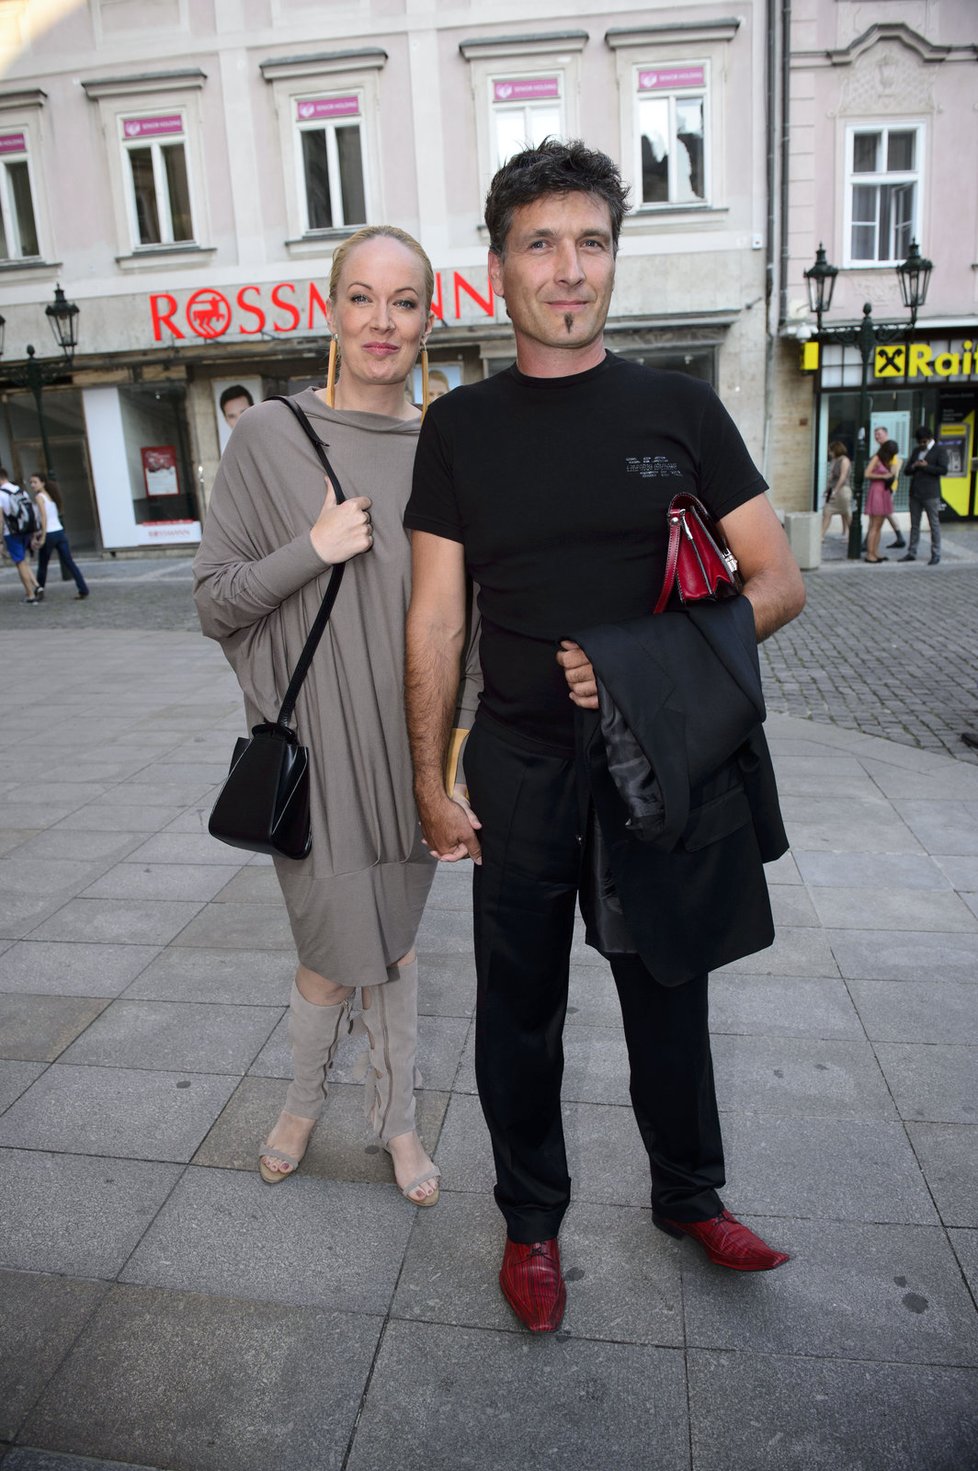 Herečka Antalová s manželem Josefem Juráškem